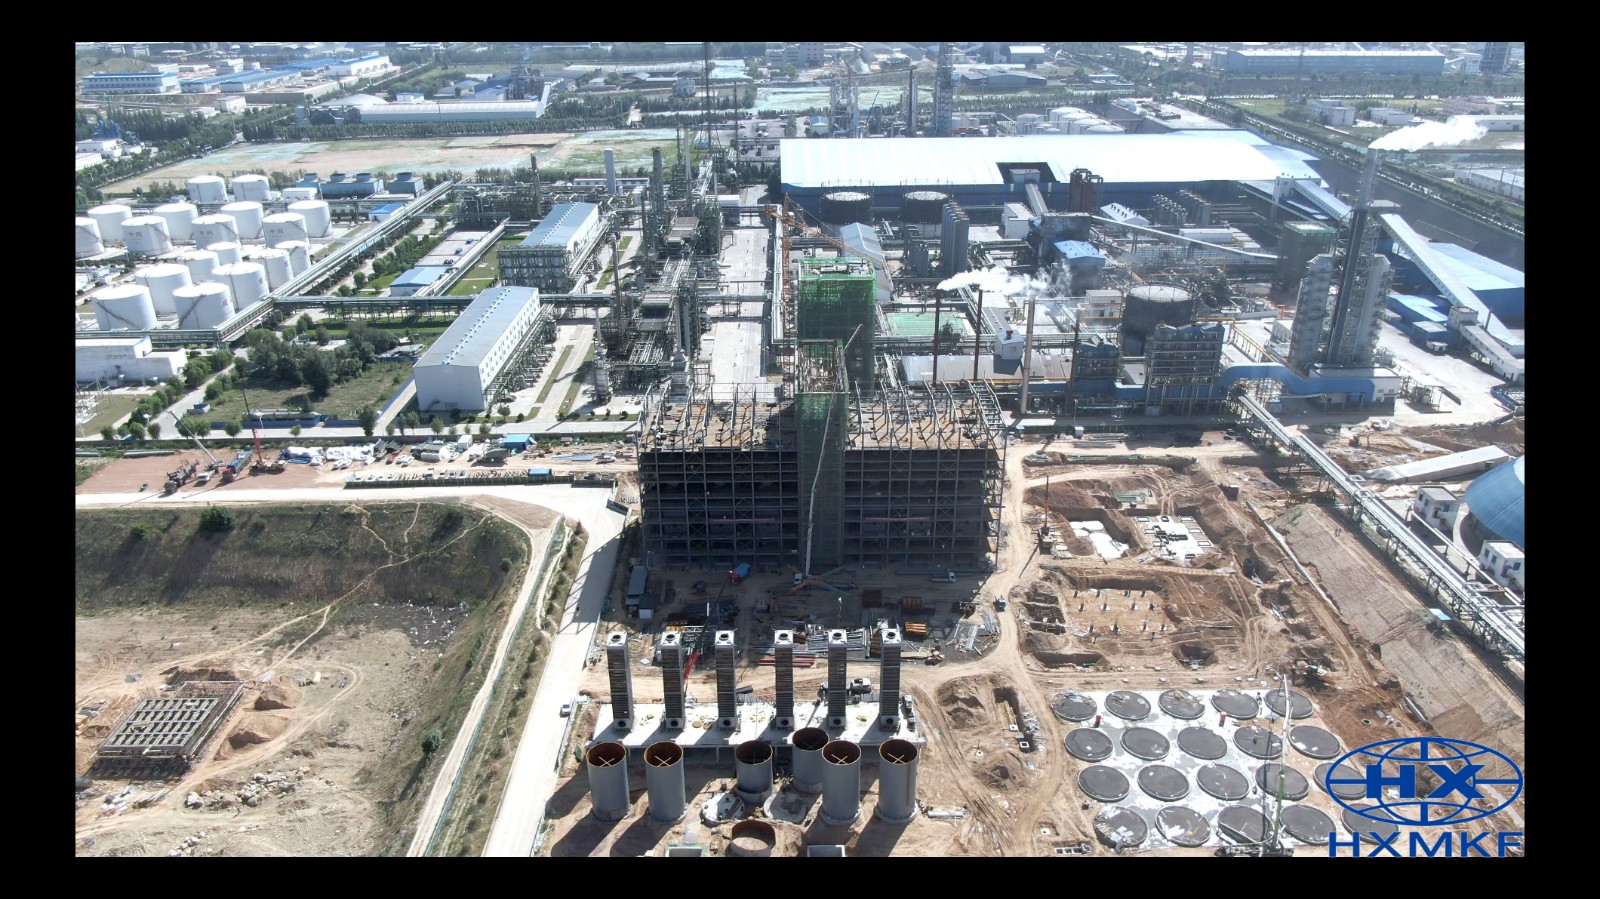 公司承建的陕西煤业化工集团神木天元化工有限公司年产135万吨兰炭装置主体结构完成